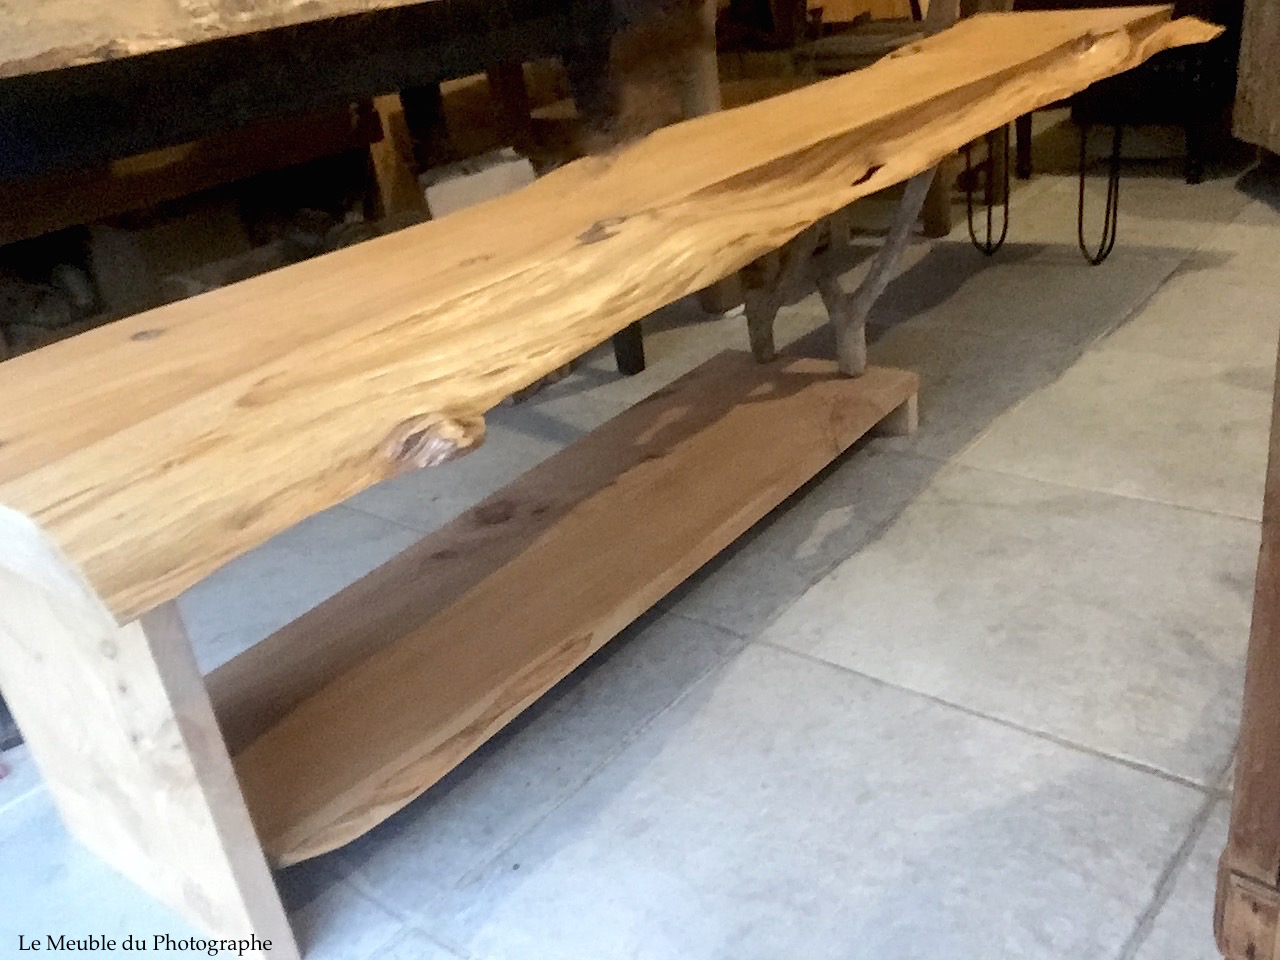 Planche bois massif / Fabrication artisanale française